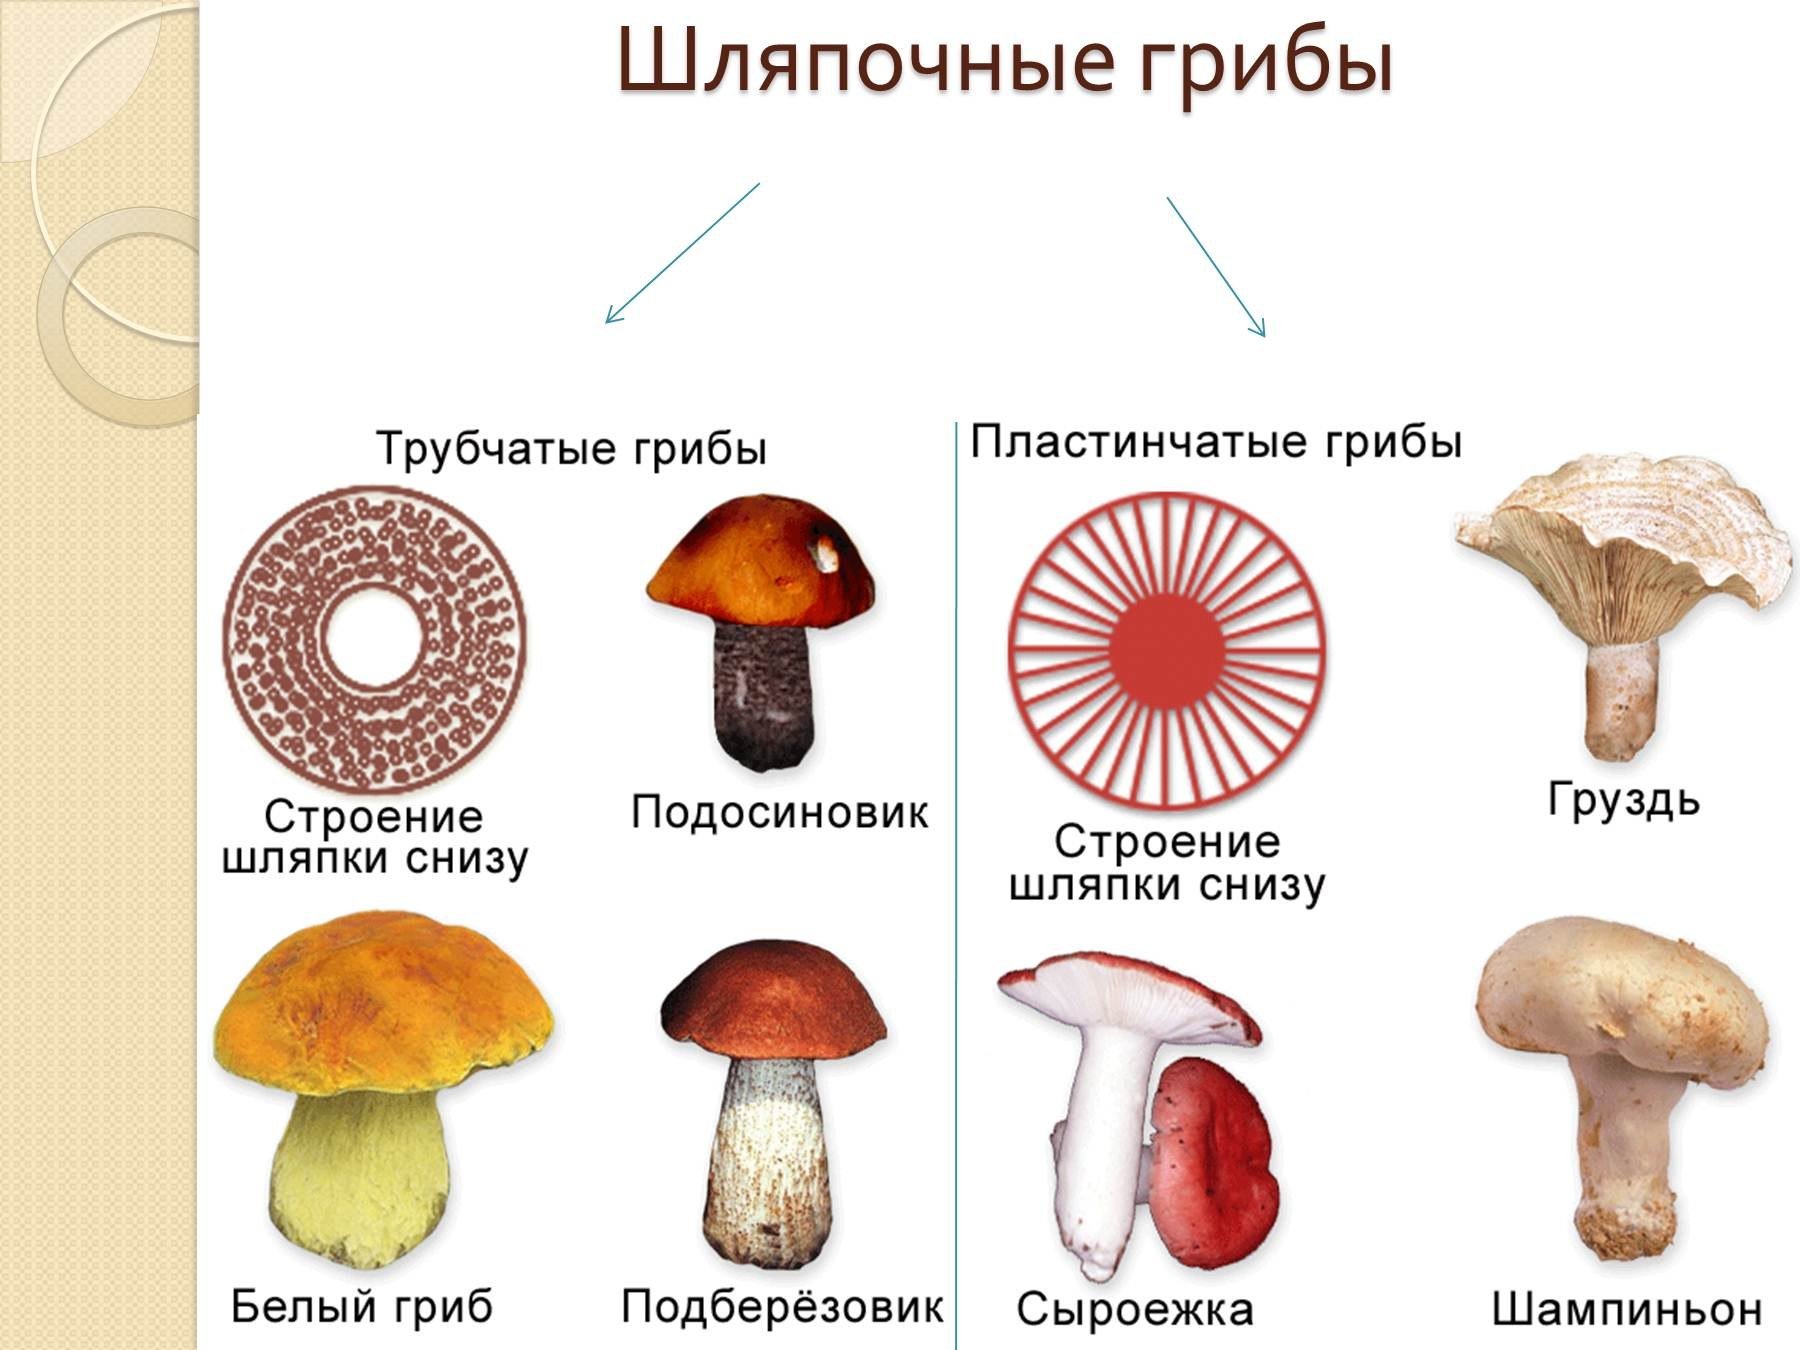 Голосеменные шляпочные грибы примеры. Шляпочные грибы трубчатые и пластинчатые грибы. Шляпочные грибы трубчатые и пластинчатые. Представители шляпочных грибов 5 класс. Несъедобные Шляпочные грибы.